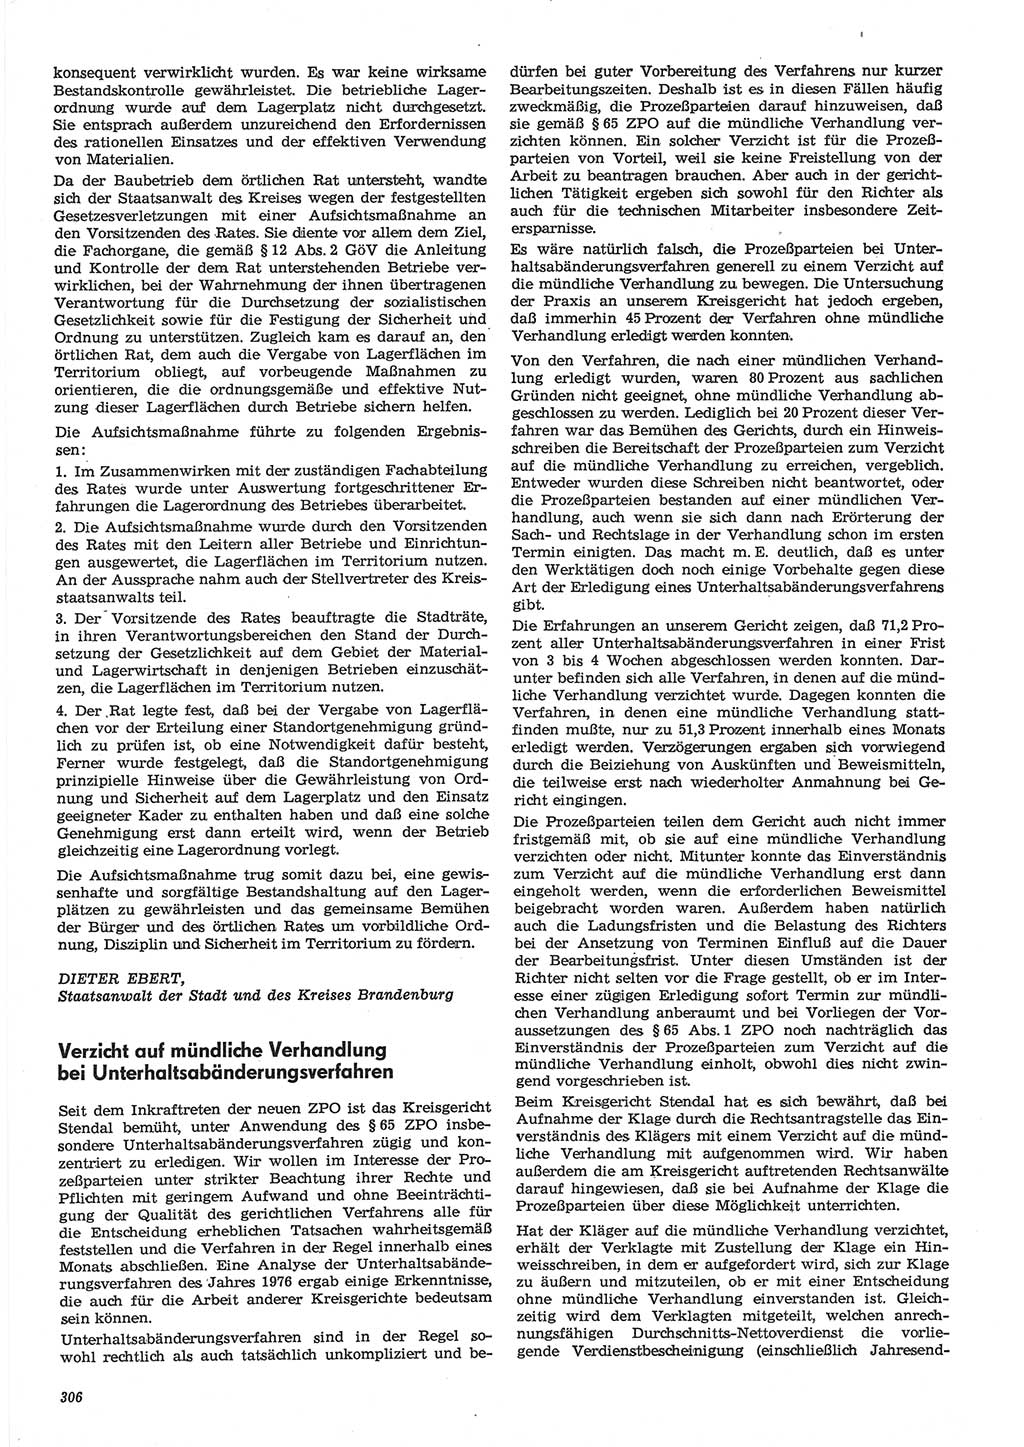 Neue Justiz (NJ), Zeitschrift für Recht und Rechtswissenschaft-Zeitschrift, sozialistisches Recht und Gesetzlichkeit, 31. Jahrgang 1977, Seite 306 (NJ DDR 1977, S. 306)